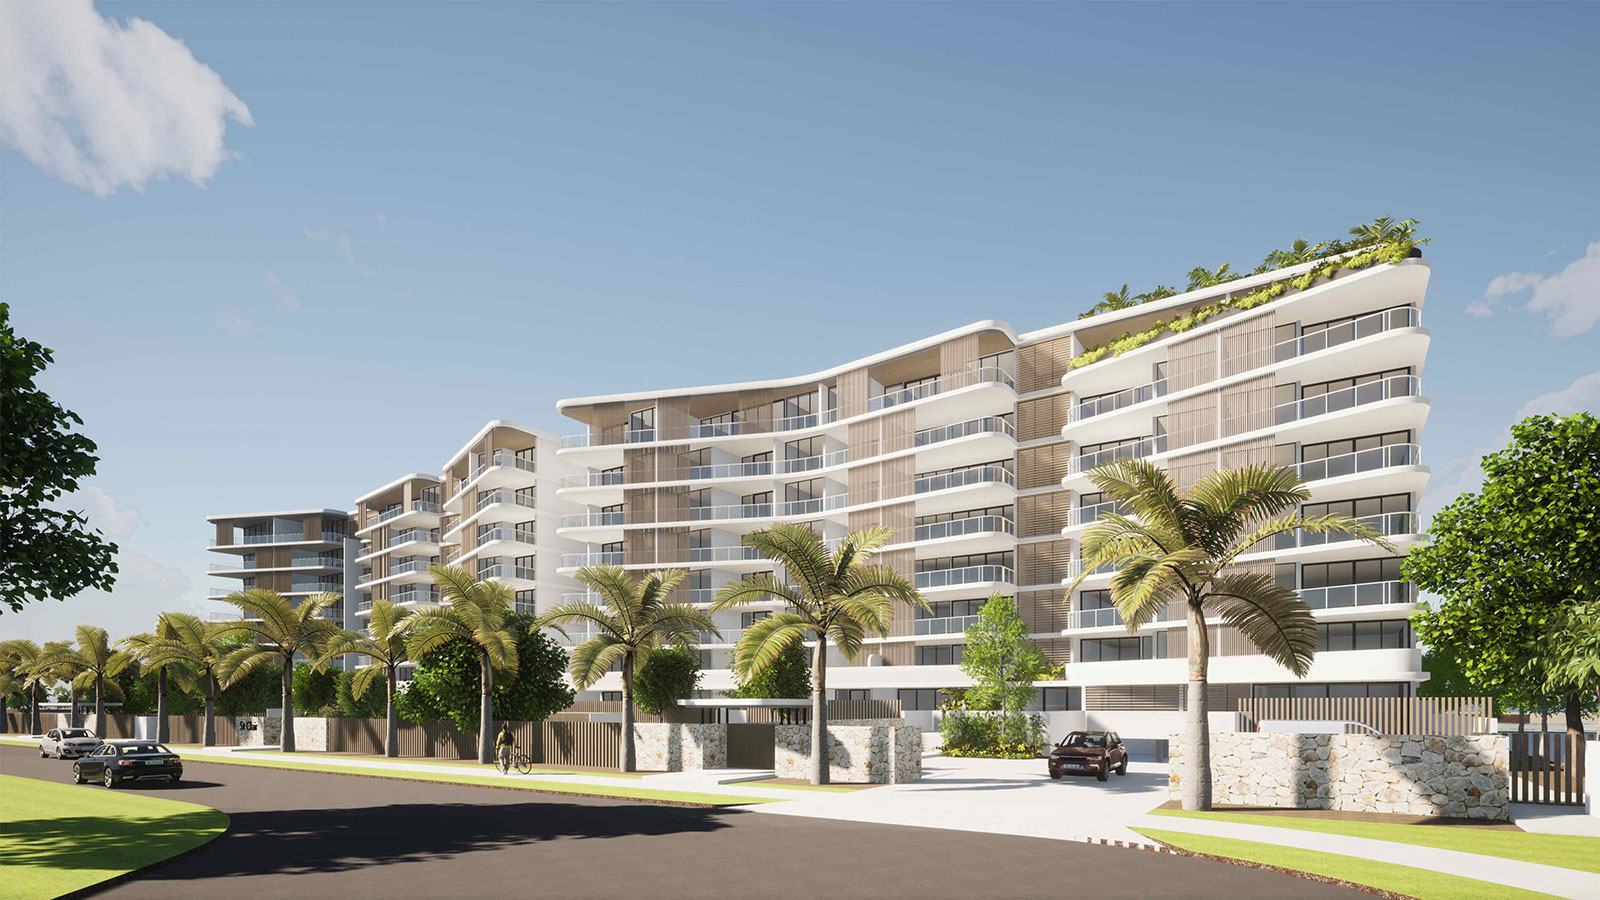 Brisbane-based developer Habitat has lodged plans for a $150-million residential development.